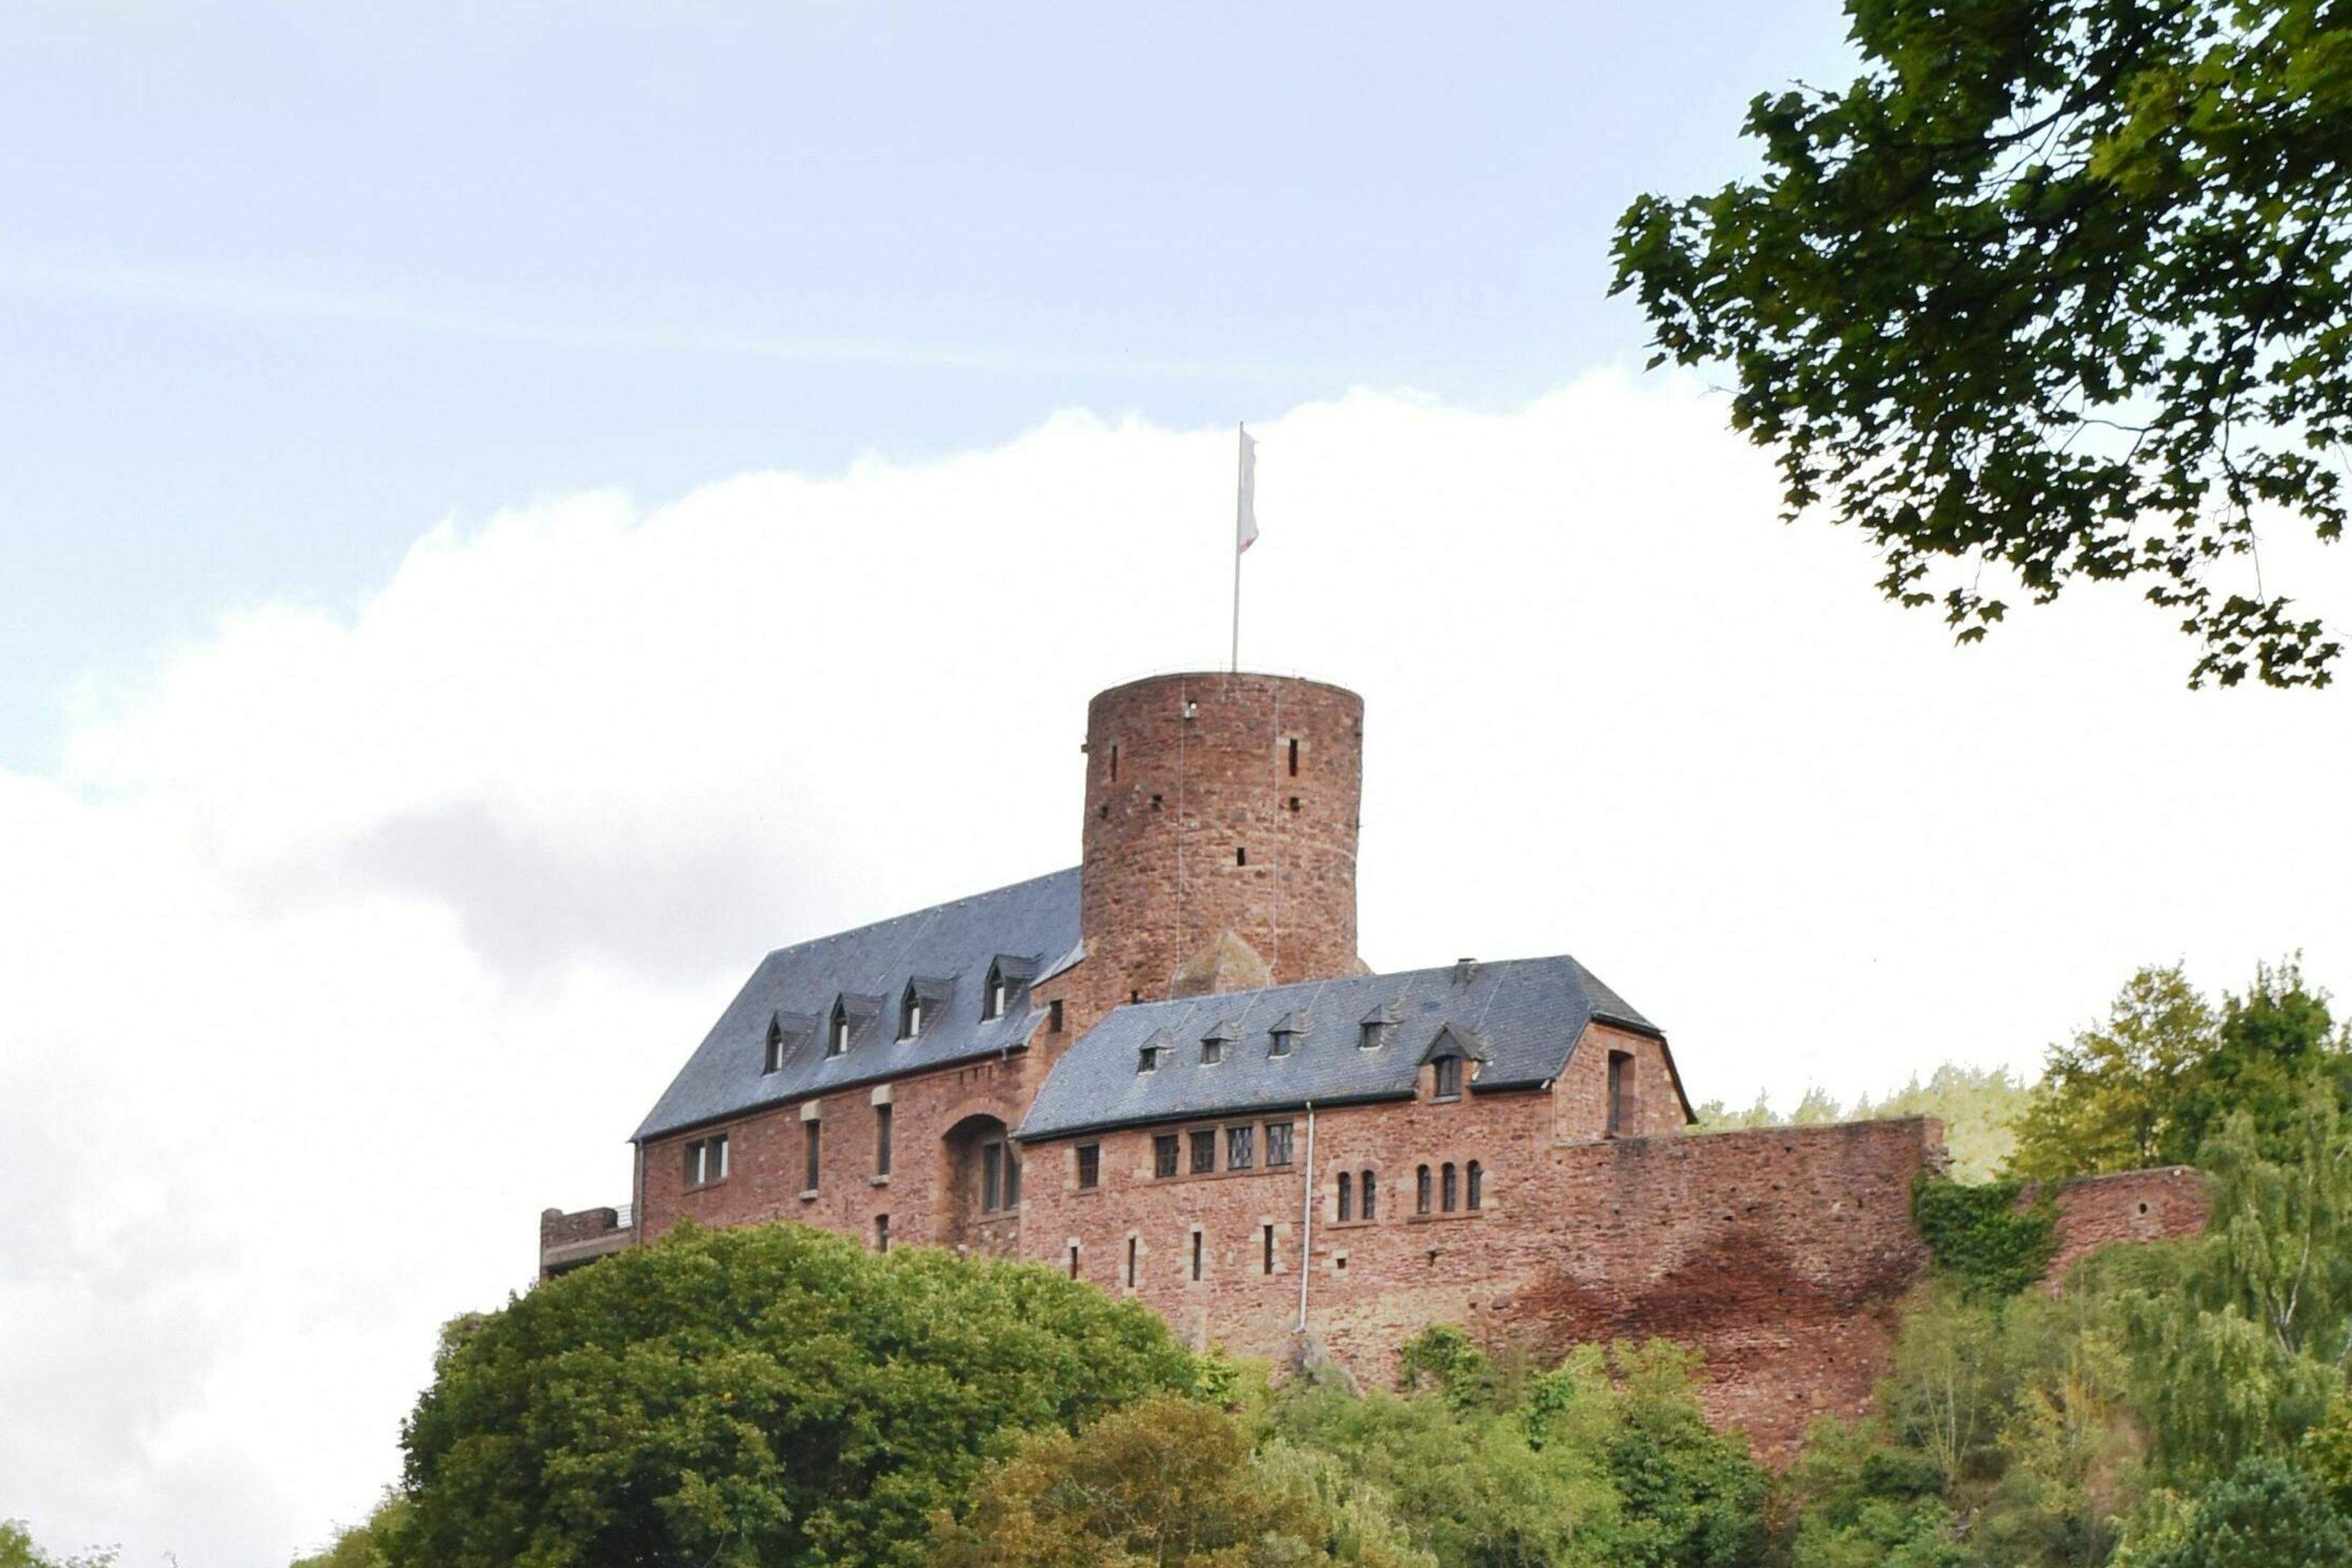 Die Burg Hengebach in Heimbach ist ein beliebtes Ausflugsziel und zählt zu den ältesten Bauwerken der Eifel. 